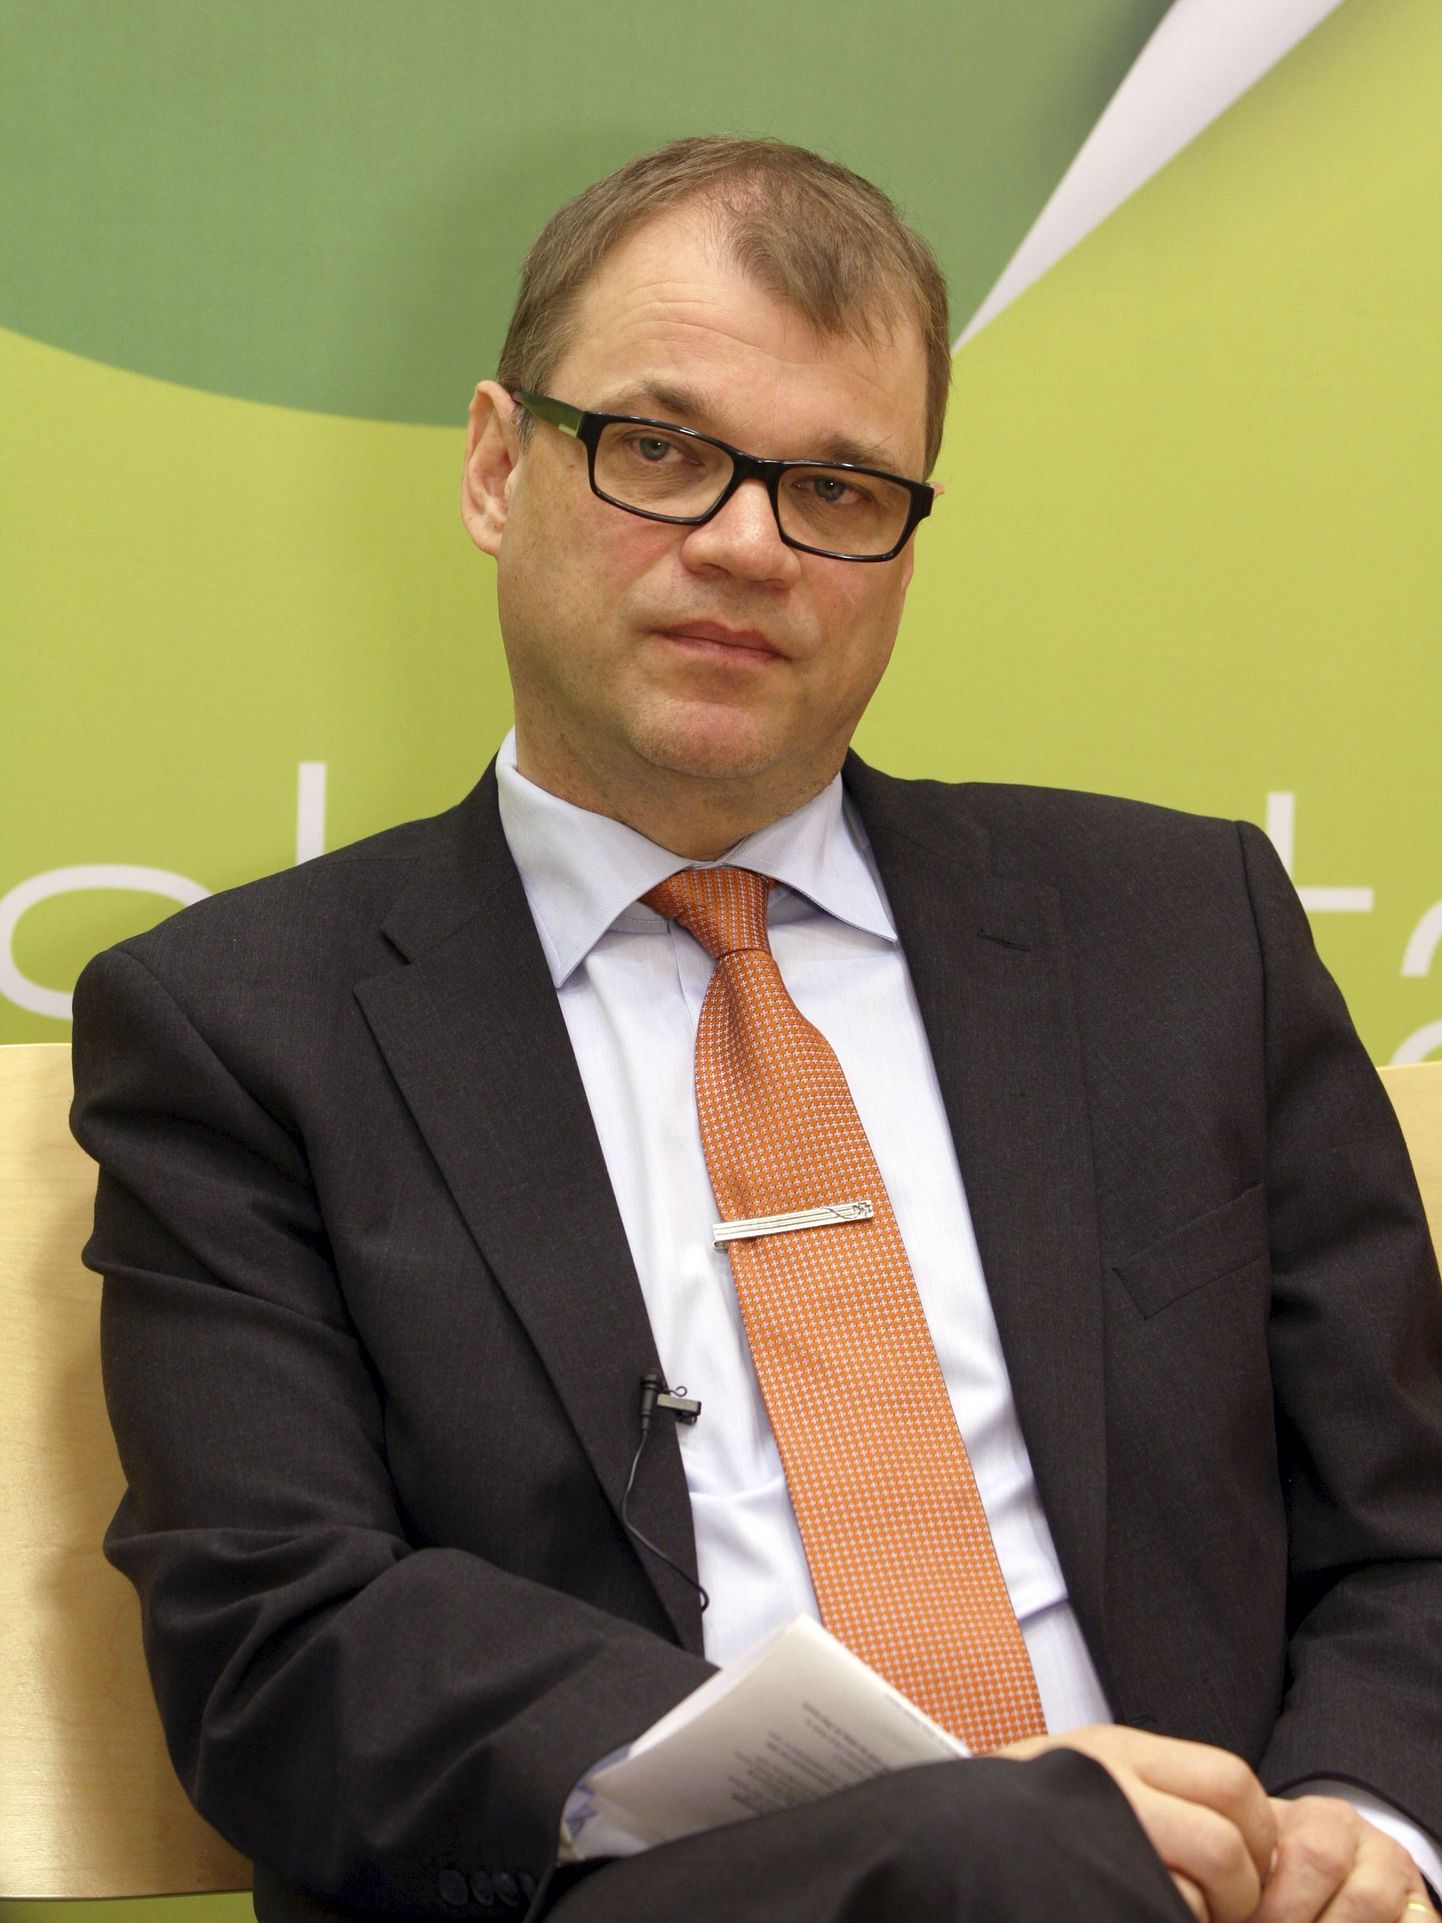 Soome parlamendivalimistel ennustatakse võitu Juha Sipilä (fotol) juhitavale Keskerakonnale ehk Keskustale.